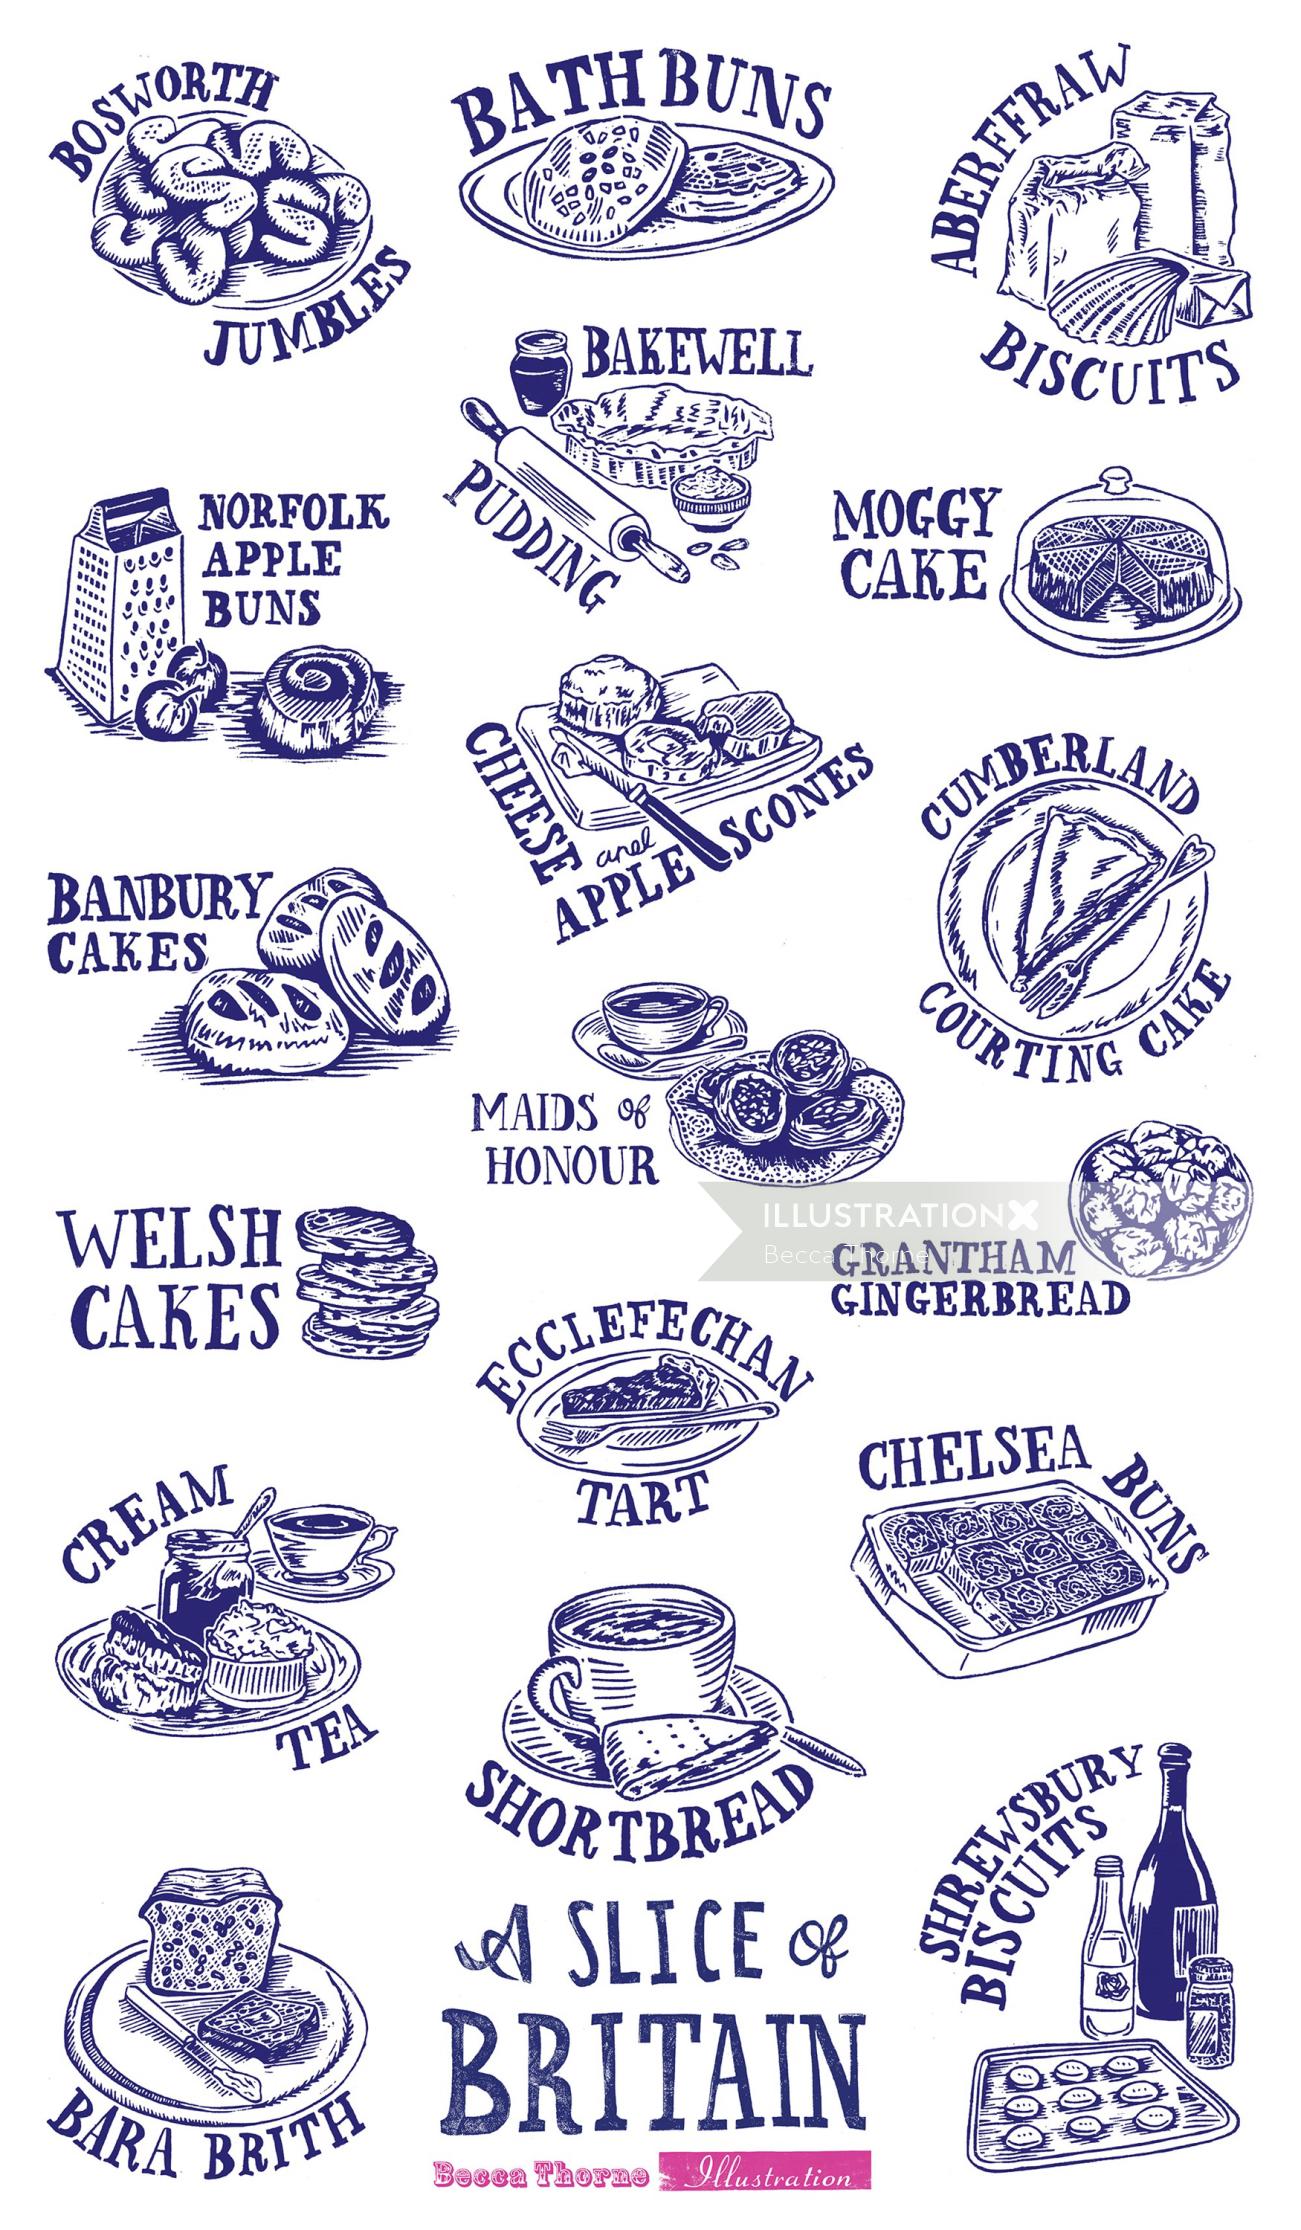 英国のケーキ、ペストリー、ビスケットのリノカットのイラストとその名前のコレクション。ボスウォ